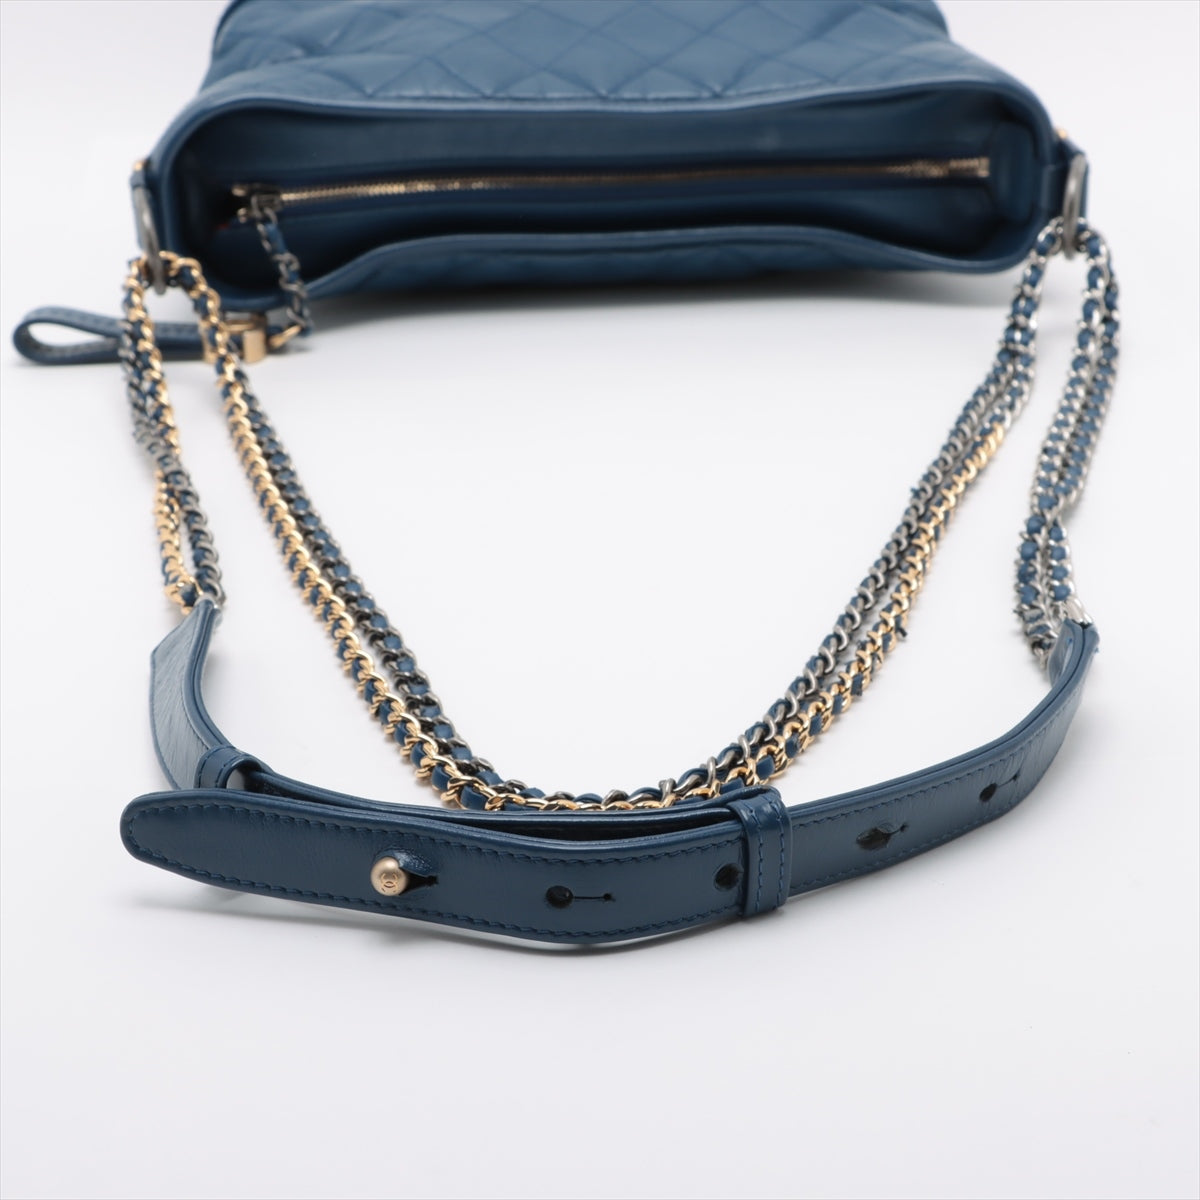 Chanel Gabrielle Doo Chanel Leather Chain shoulder bag Blue Gold x gunmetallic hardware 24XXXXXX